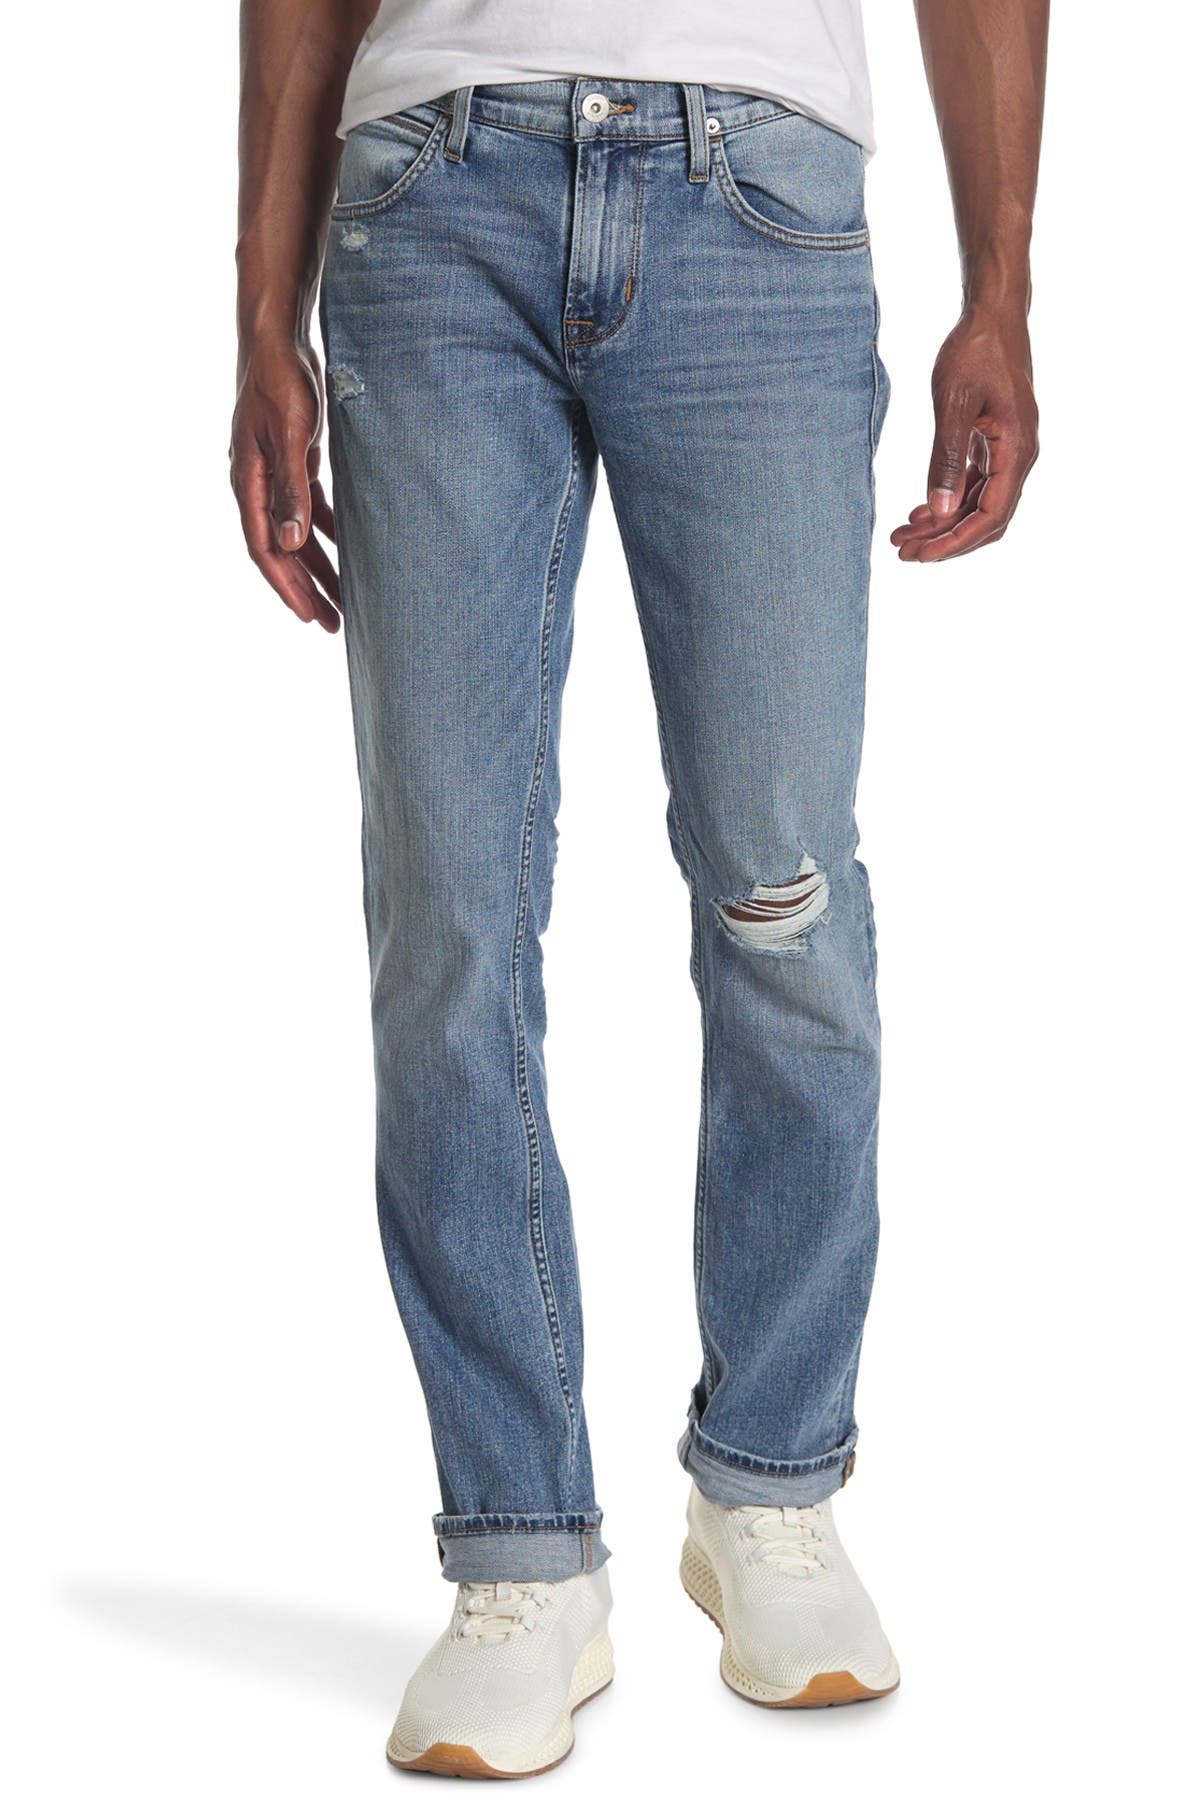 HUDSON Byron Straight Men's Kelt Medium Wash Jeans